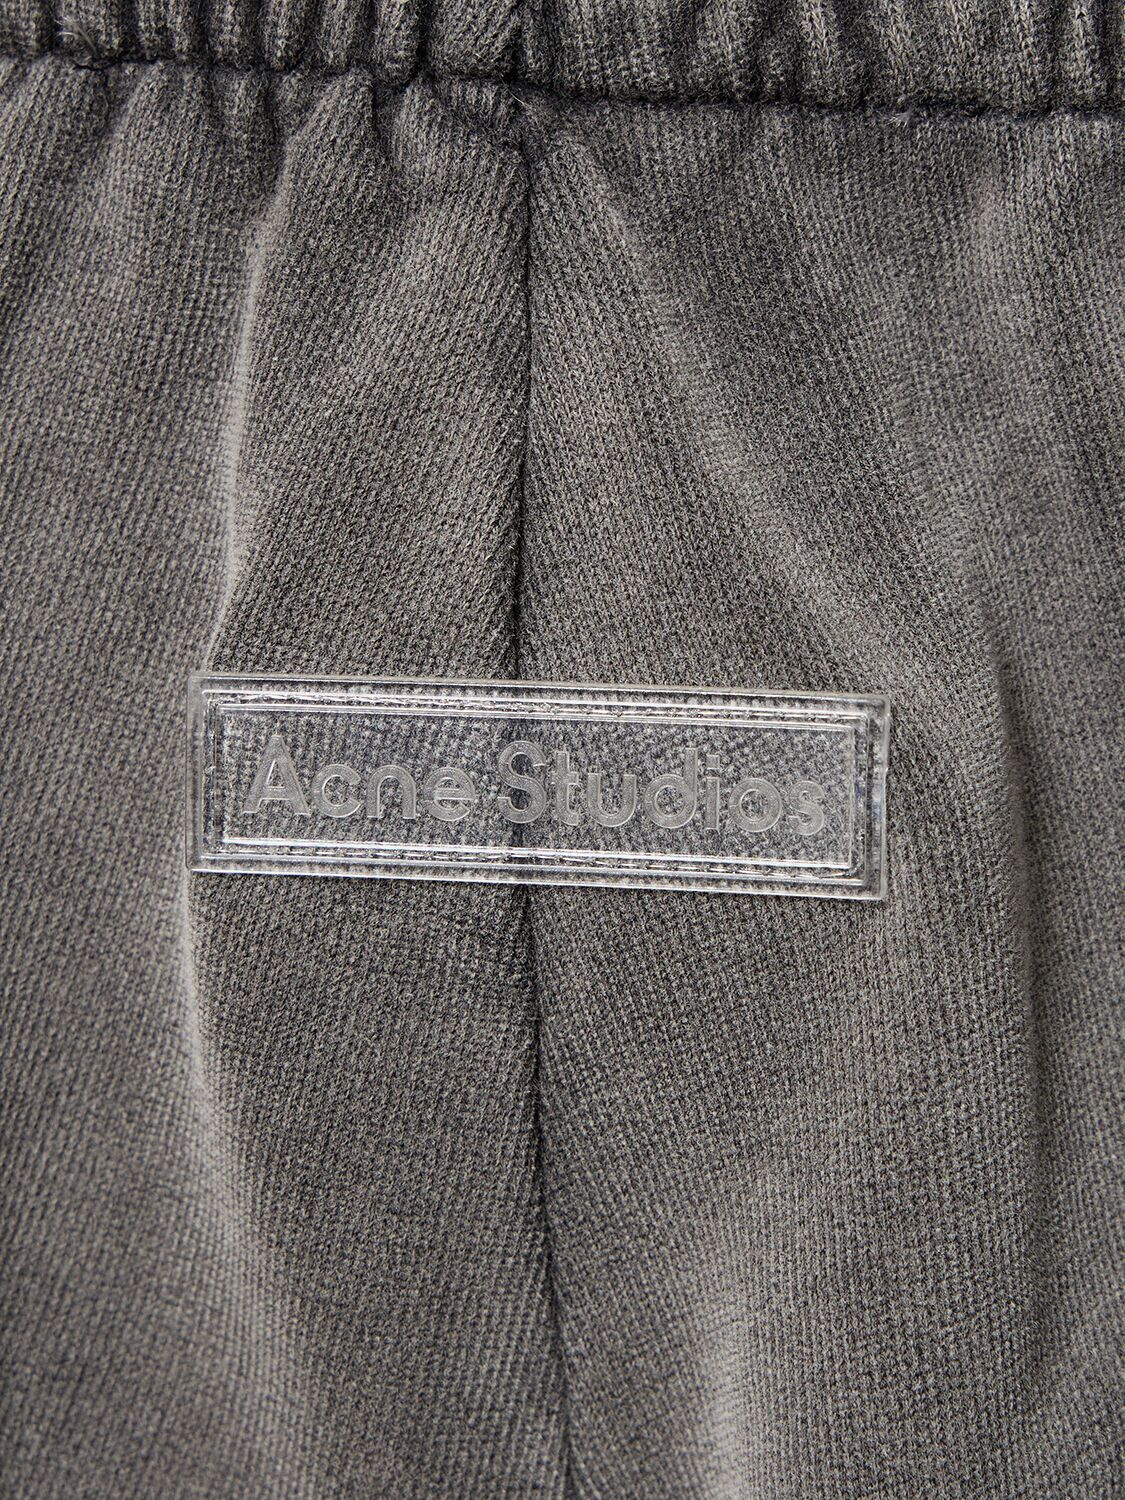 Shop Acne Studios Pale Vintage Cotton Sweatpants In Washed Black